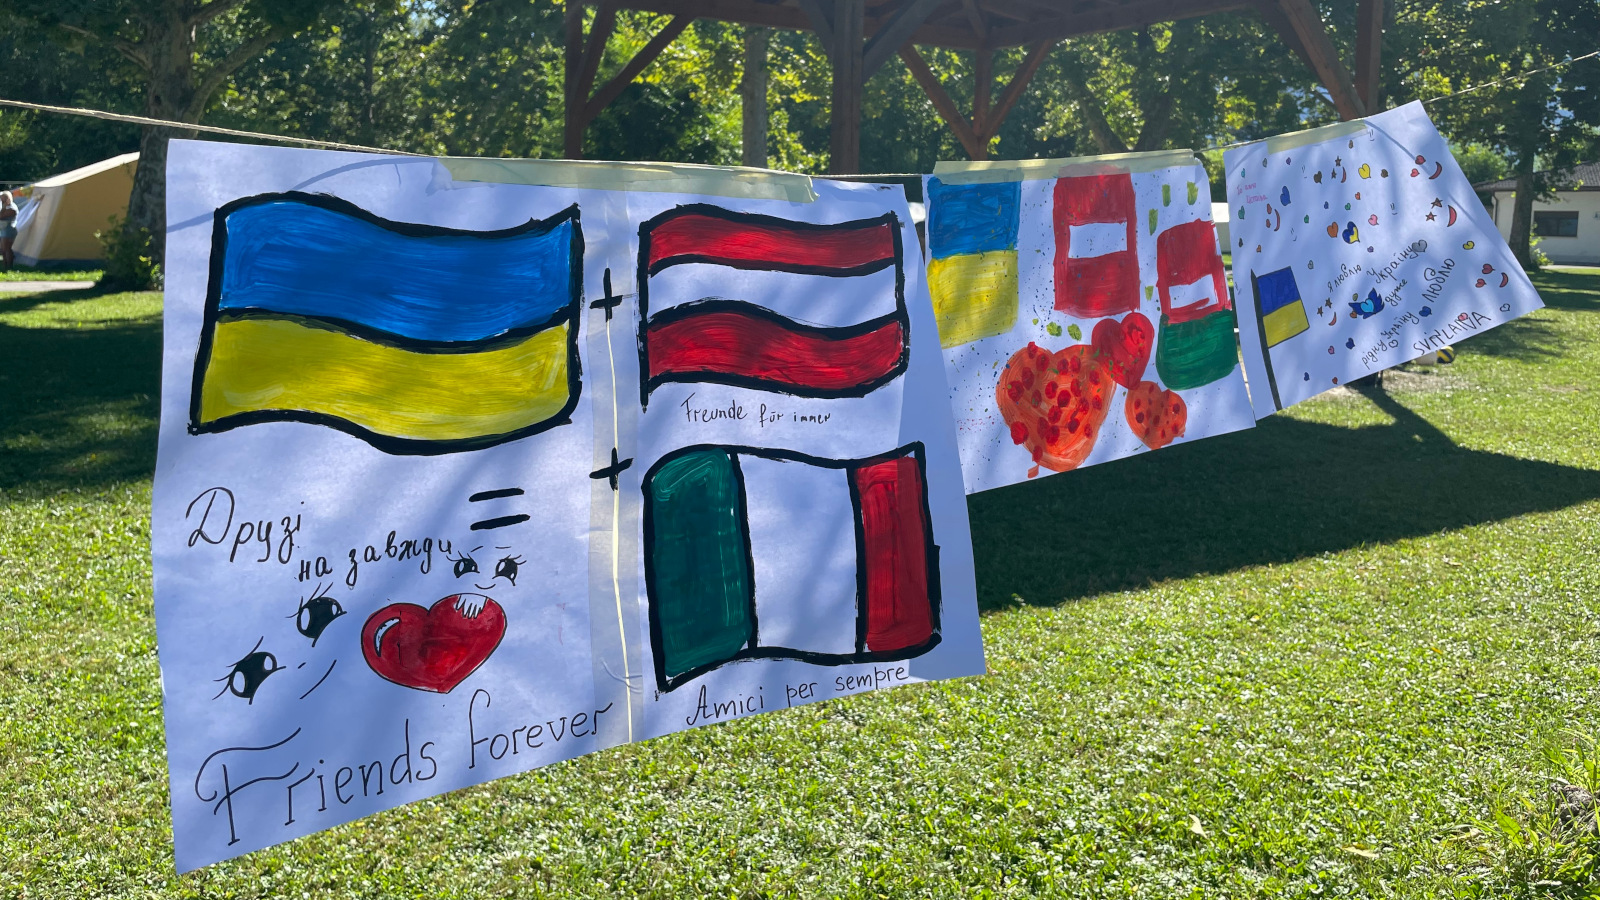 von Kindern gemalte Bilder auf einer Leine aufgehängt, motive: die urainische, österreichische und italienische Flagge und einige Schriftzüge in den jeweiligen Sprachen, "Freunde für immer".